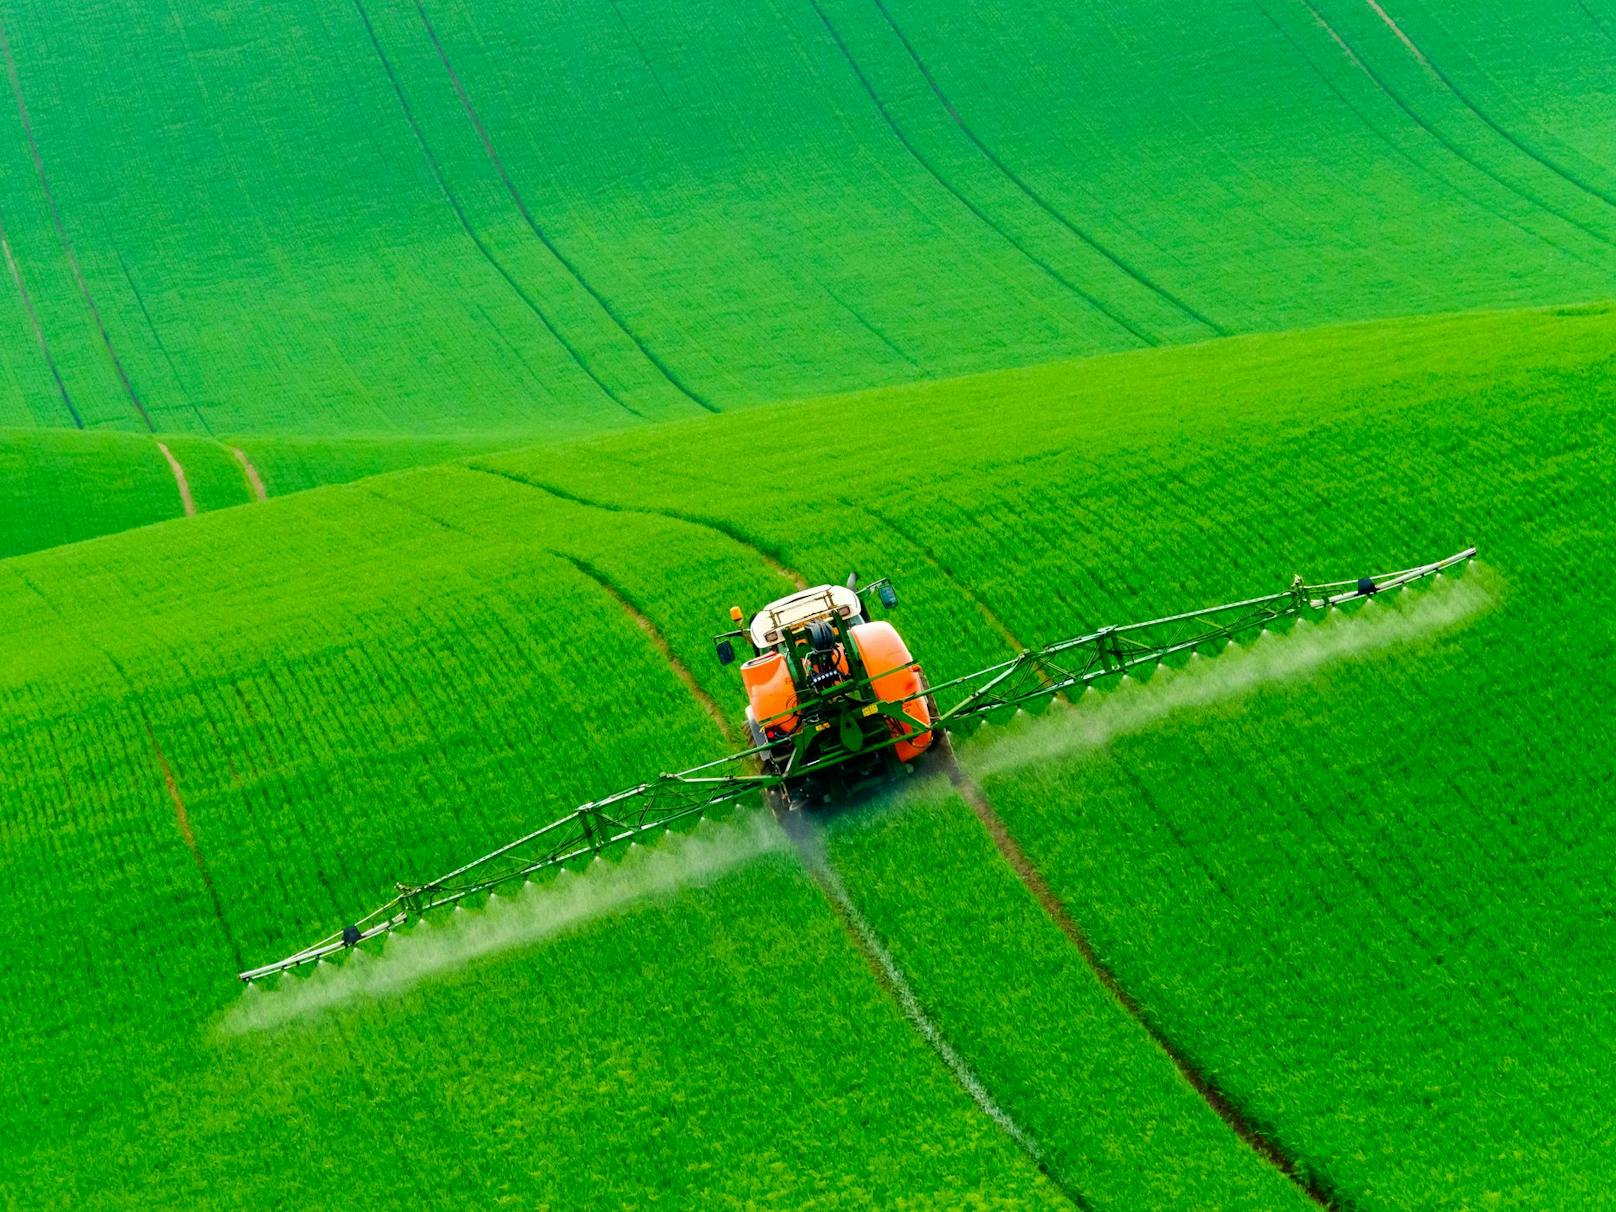 Bei der Reduzierung von Pestiziden in der Europäischen Union wäre der Einsatz von Neuer Gentechnik kontraproduktiv.